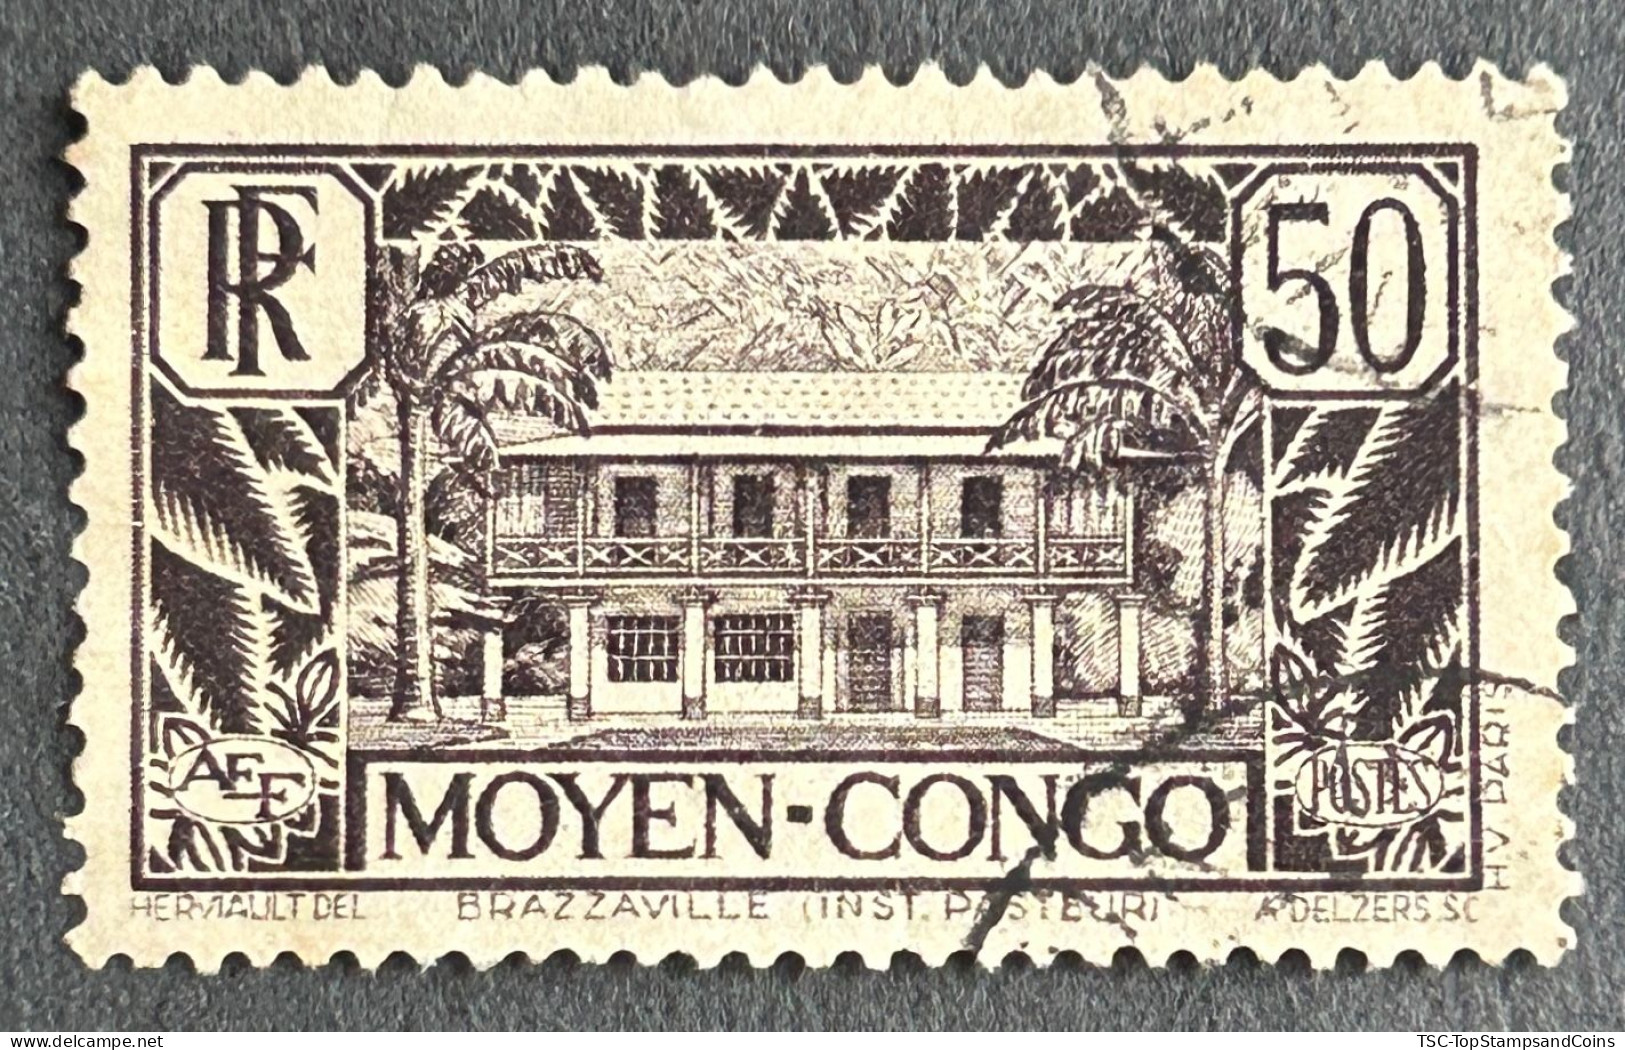 FRCG124U1 - Brazzaville - Pasteur Institute - 50 C Used Stamp - Middle Congo - 1933 - Usati